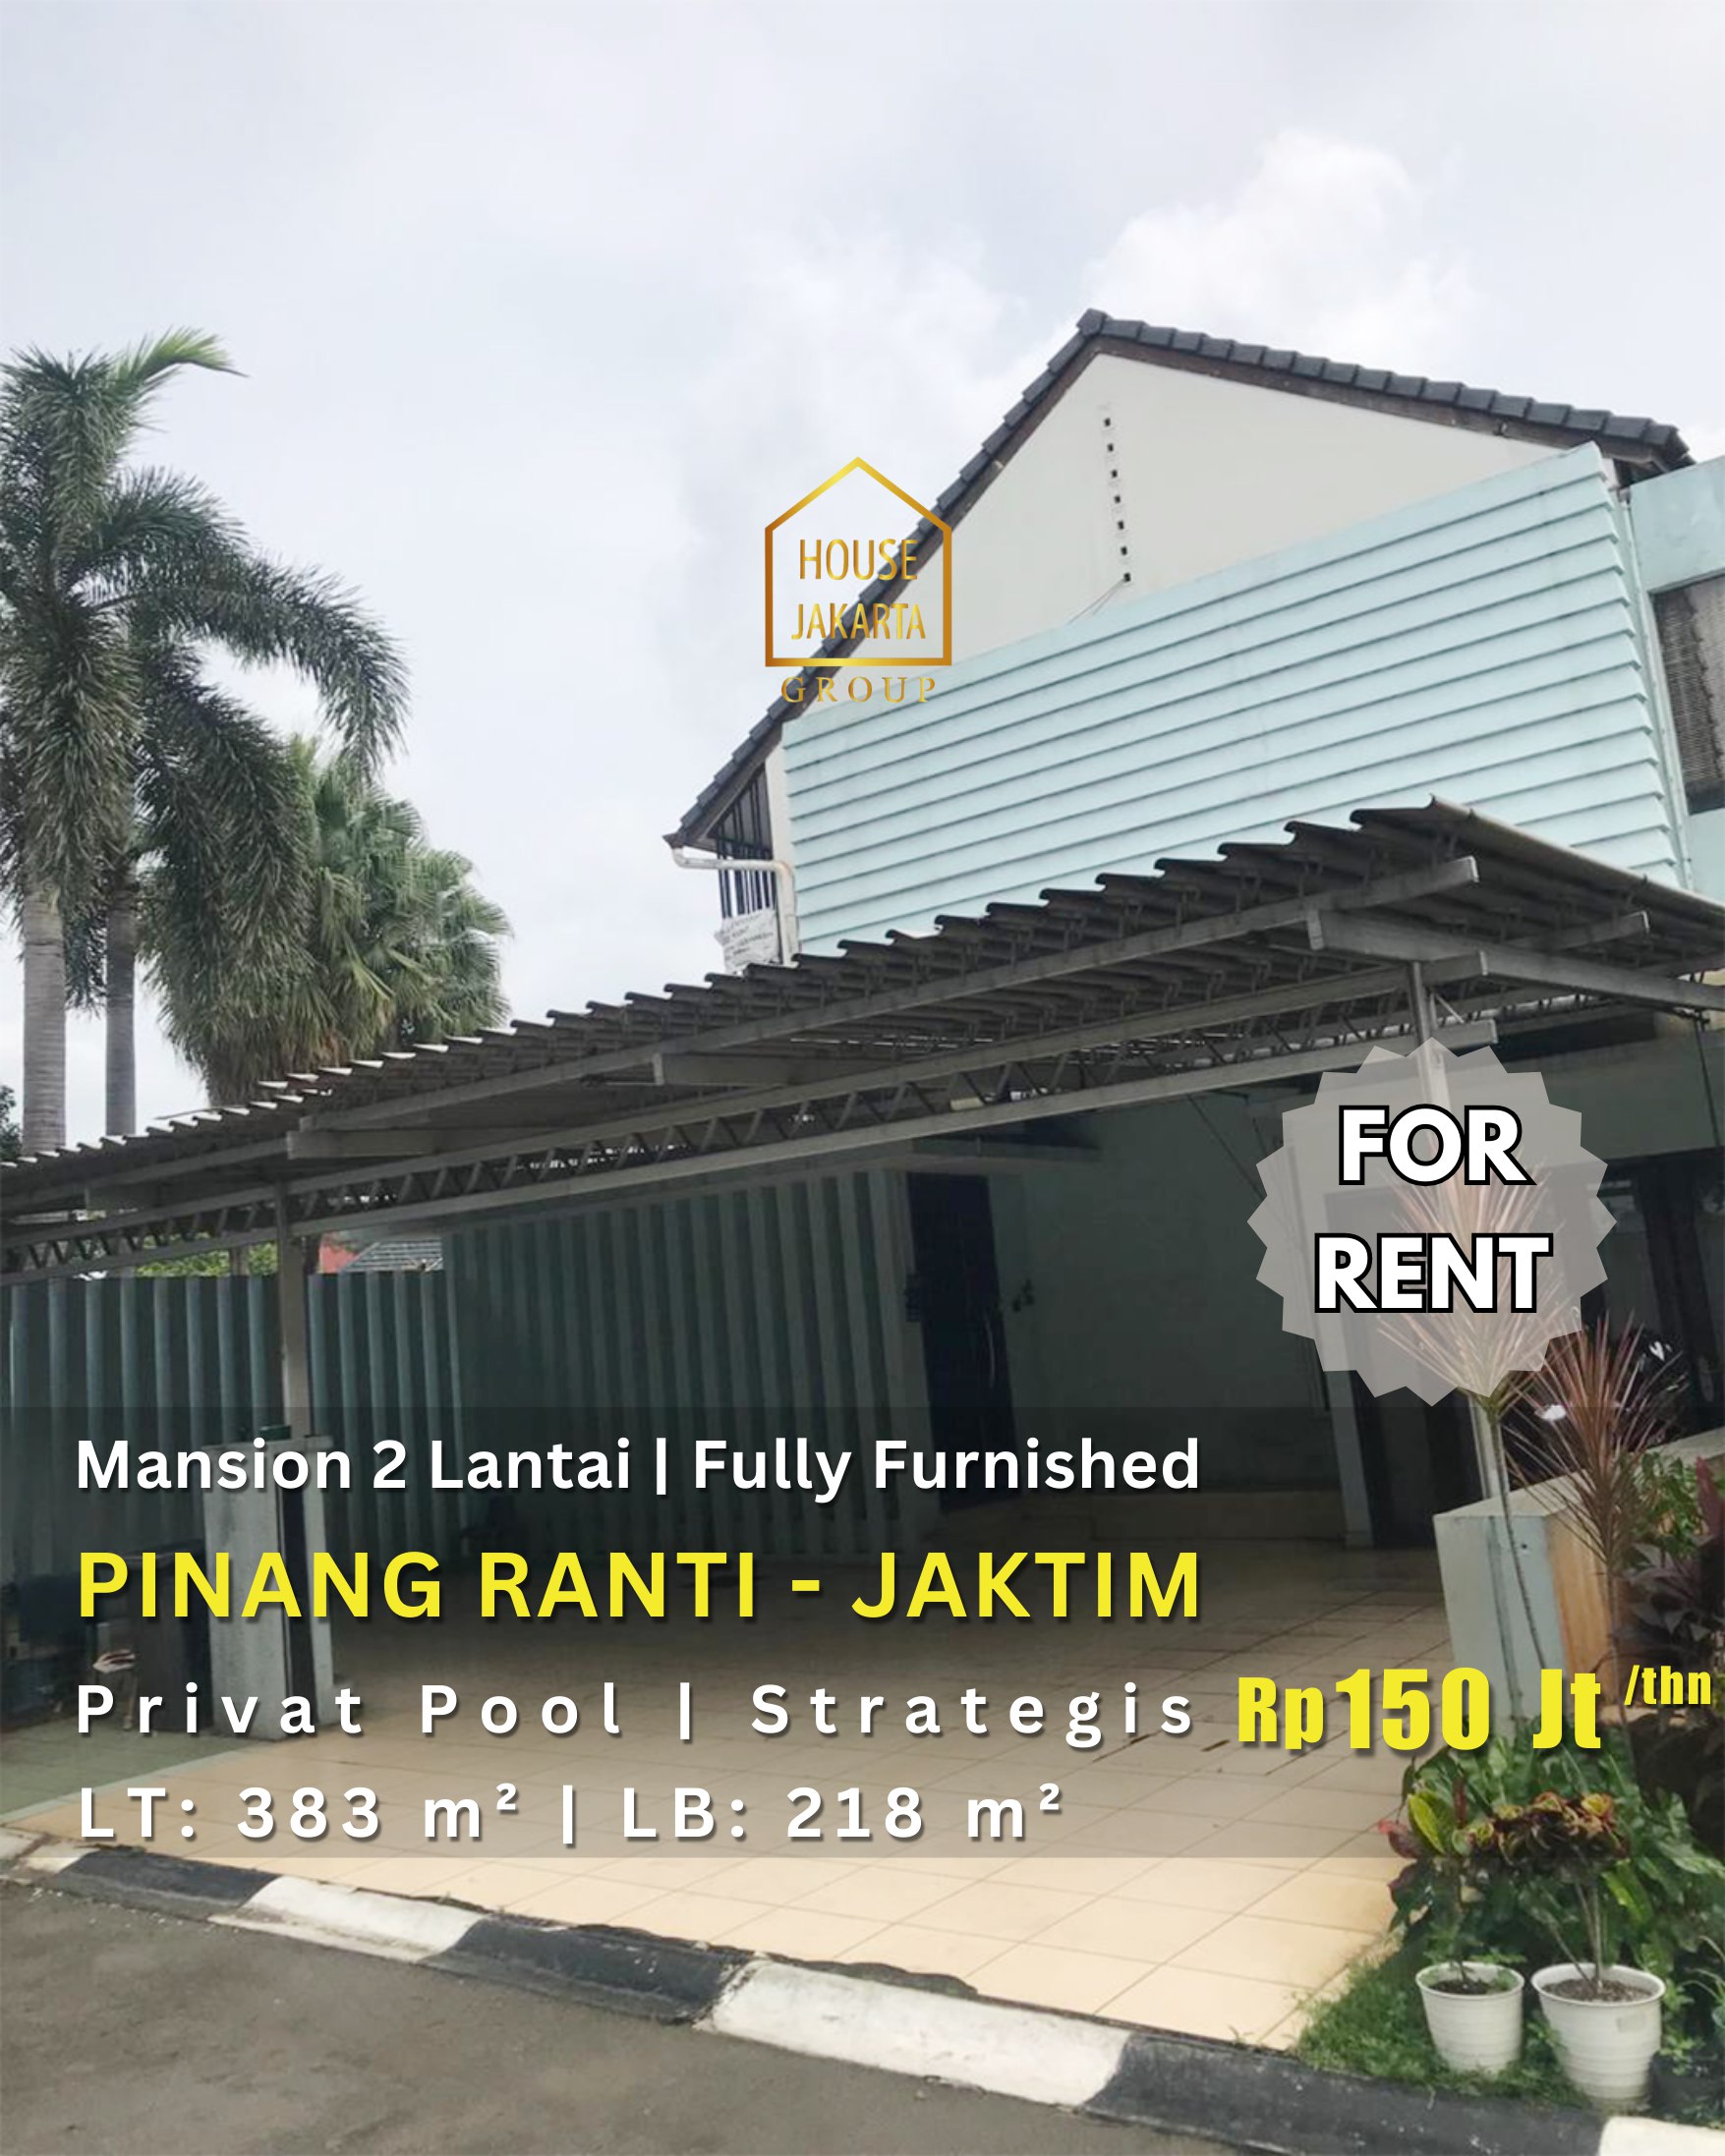  For Rent: Mansion 2 Lantai Pinang Ranti - Jaktim Di Lokasi Strategis Fully Furnished, Ada Private Pool.